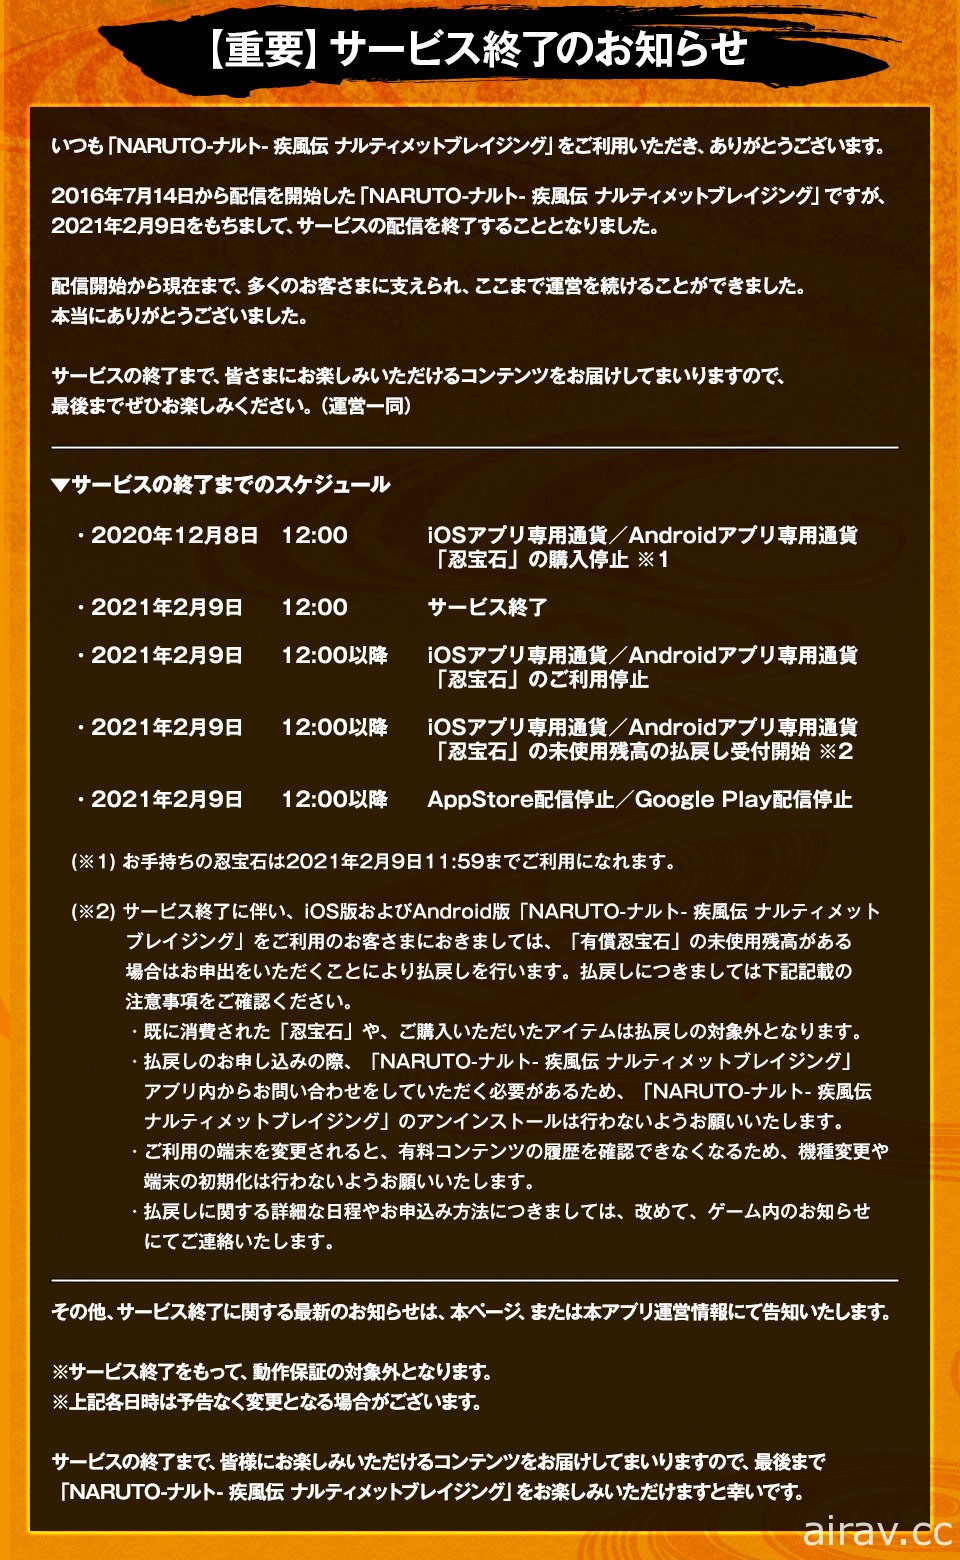 《火影忍者 疾風傳 終極熾焰》宣布 2021 年 2 月 9 日結束營運